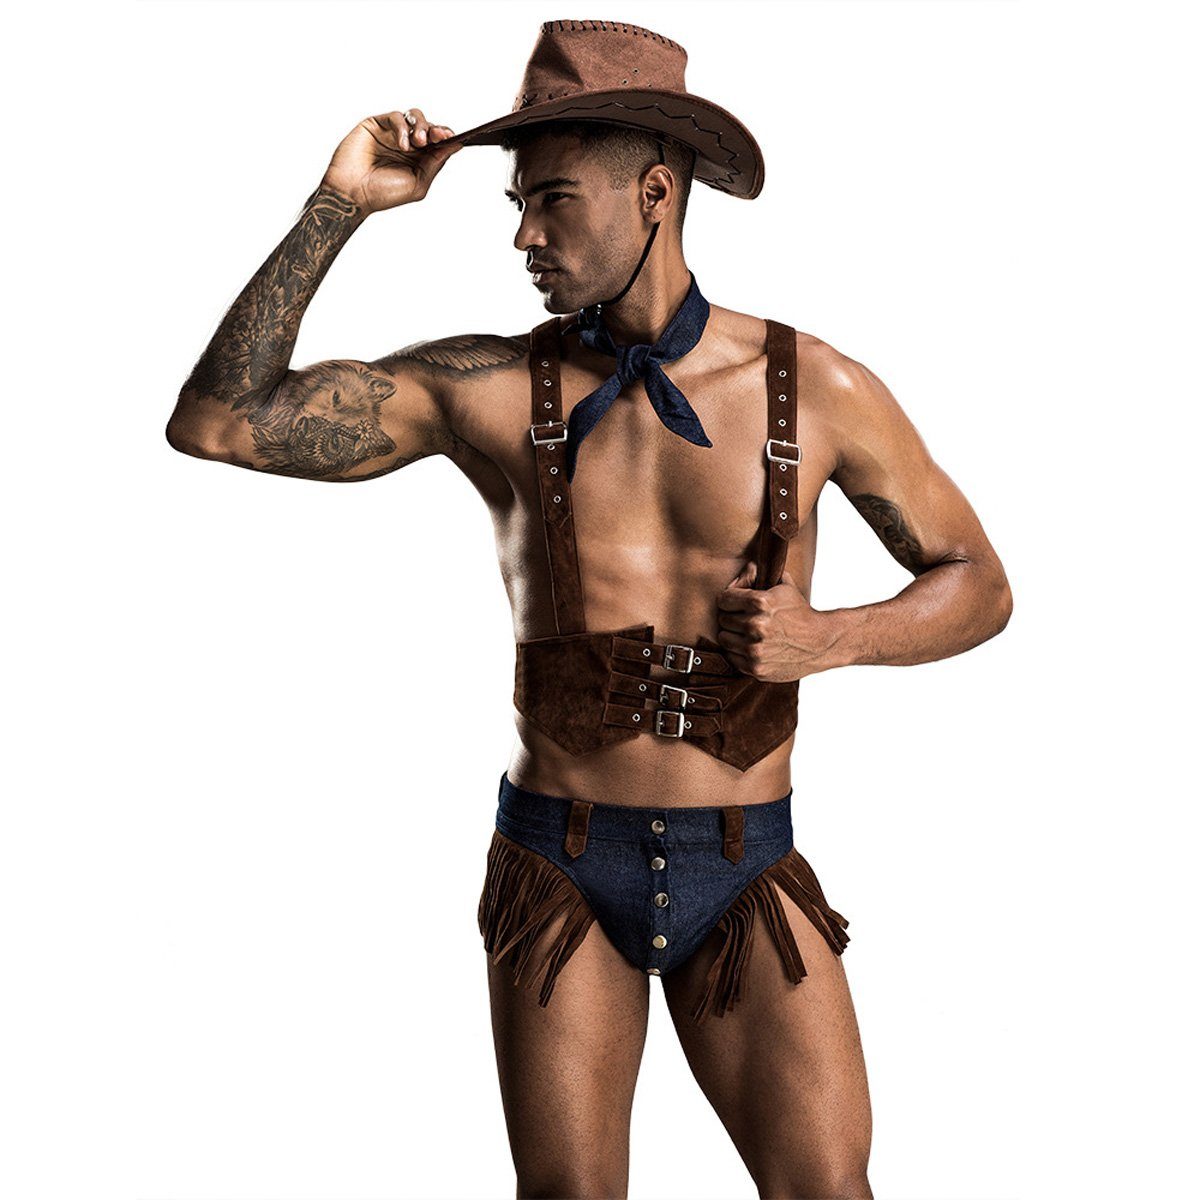 yozhiqu Teufel-Kostüm Sexy Unterwäsche-Sets für Männer - Cosplay Cowboy Boys Uniformen, Weich und bequem, perfekt für Clubkleidung, Cosplay